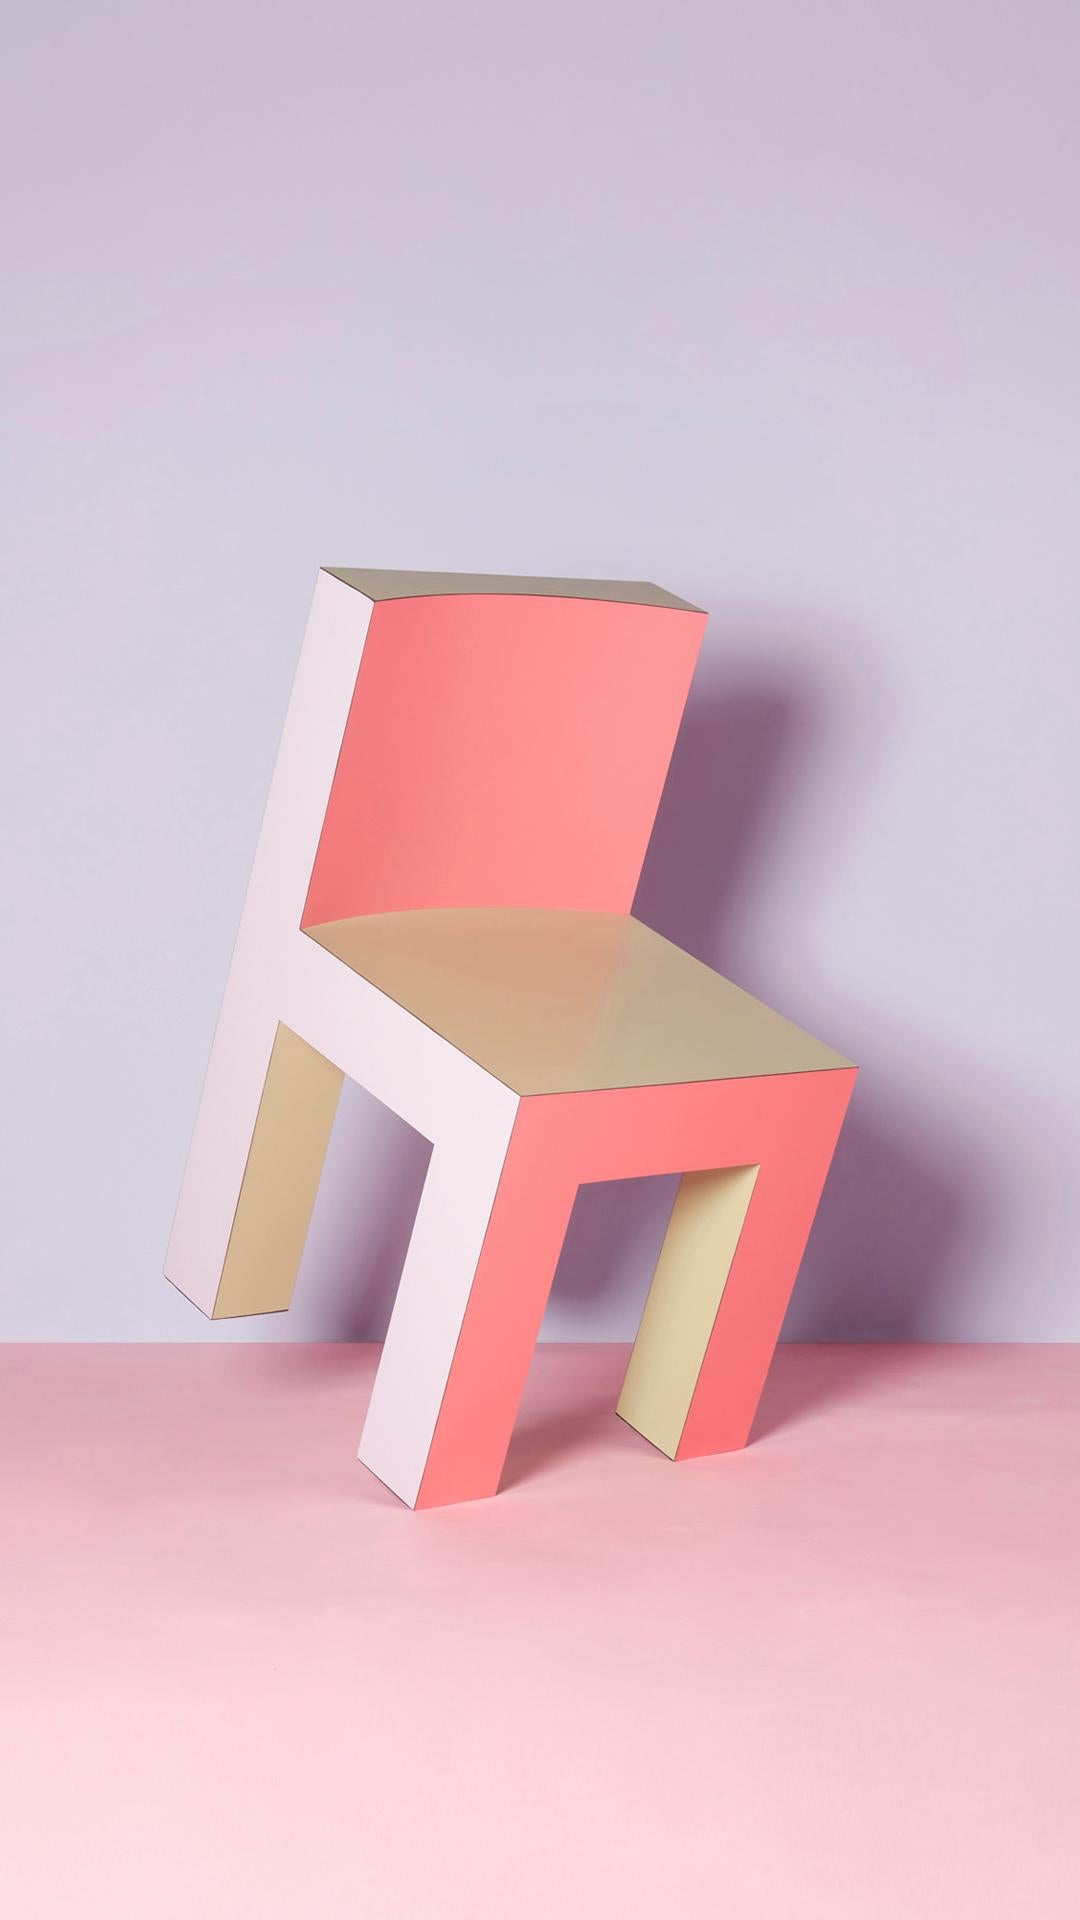 La chaise Tagadà est l'aboutissement de l'ADN du Studio : une matrice de rigueur et de jeu, de minimalisme et d'ironie. Formes, proportions et couleurs se rejoignent dans une pièce de design emblématique.

Tagadà Collectional est une collection